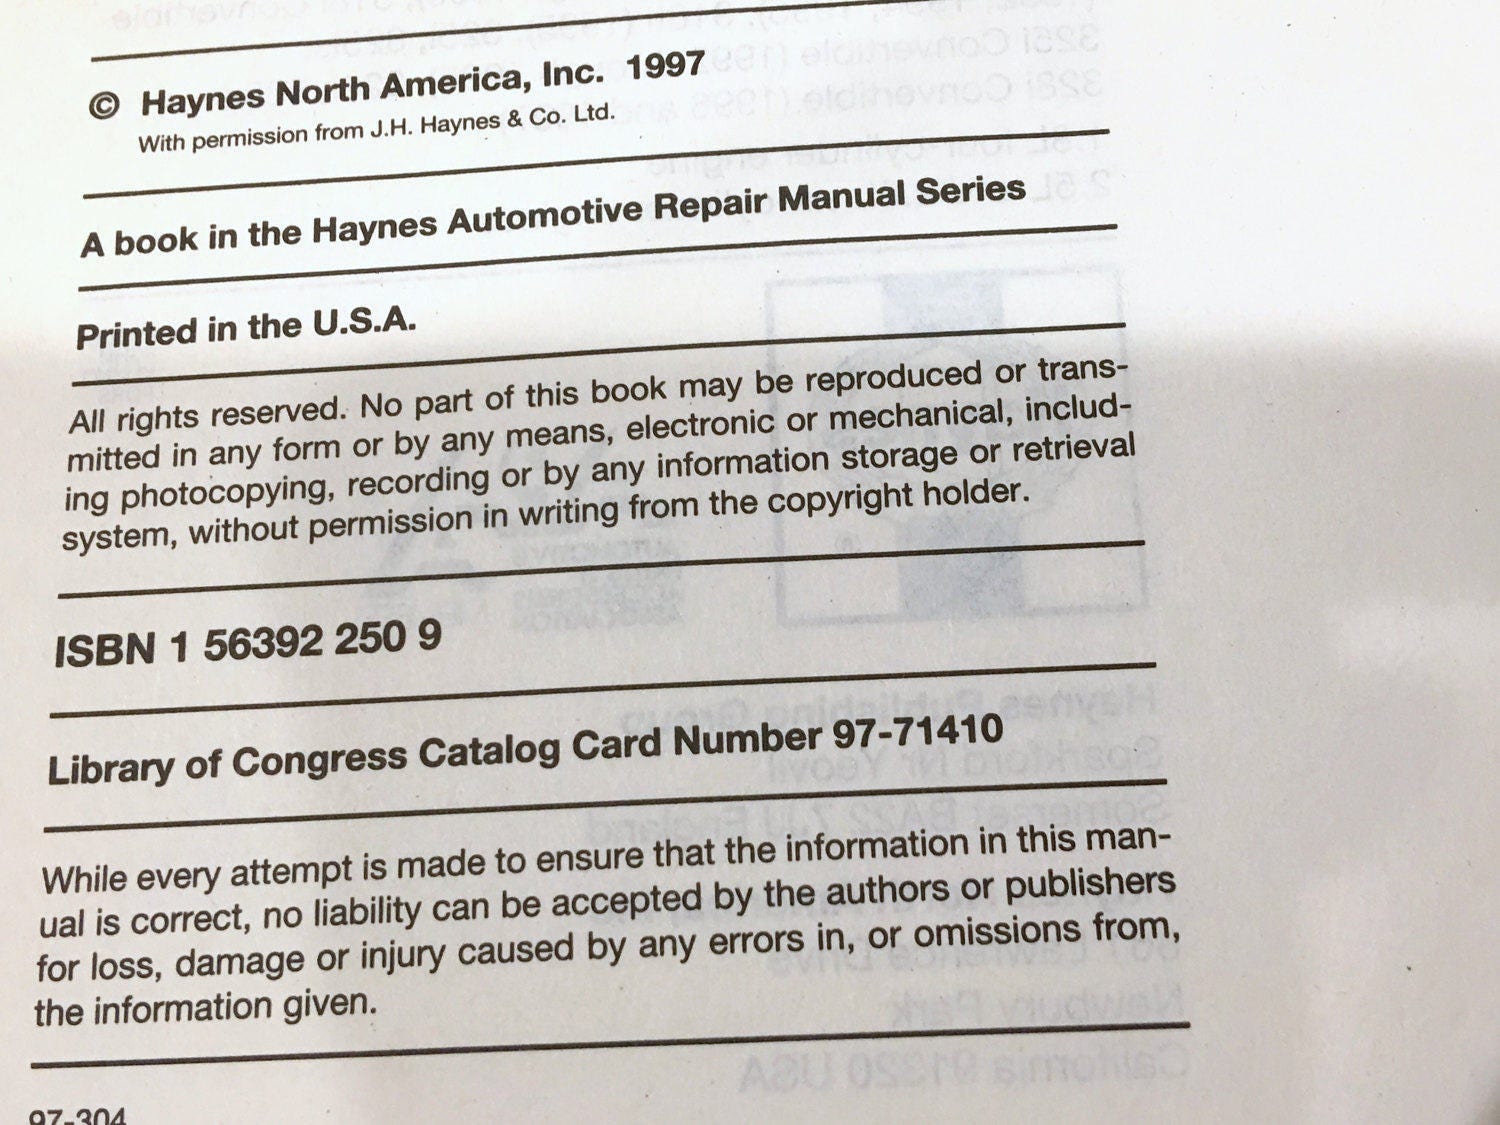 BMW Owner Manual 1995 AND 92 -97 BMW Repair Manual, Reference Book